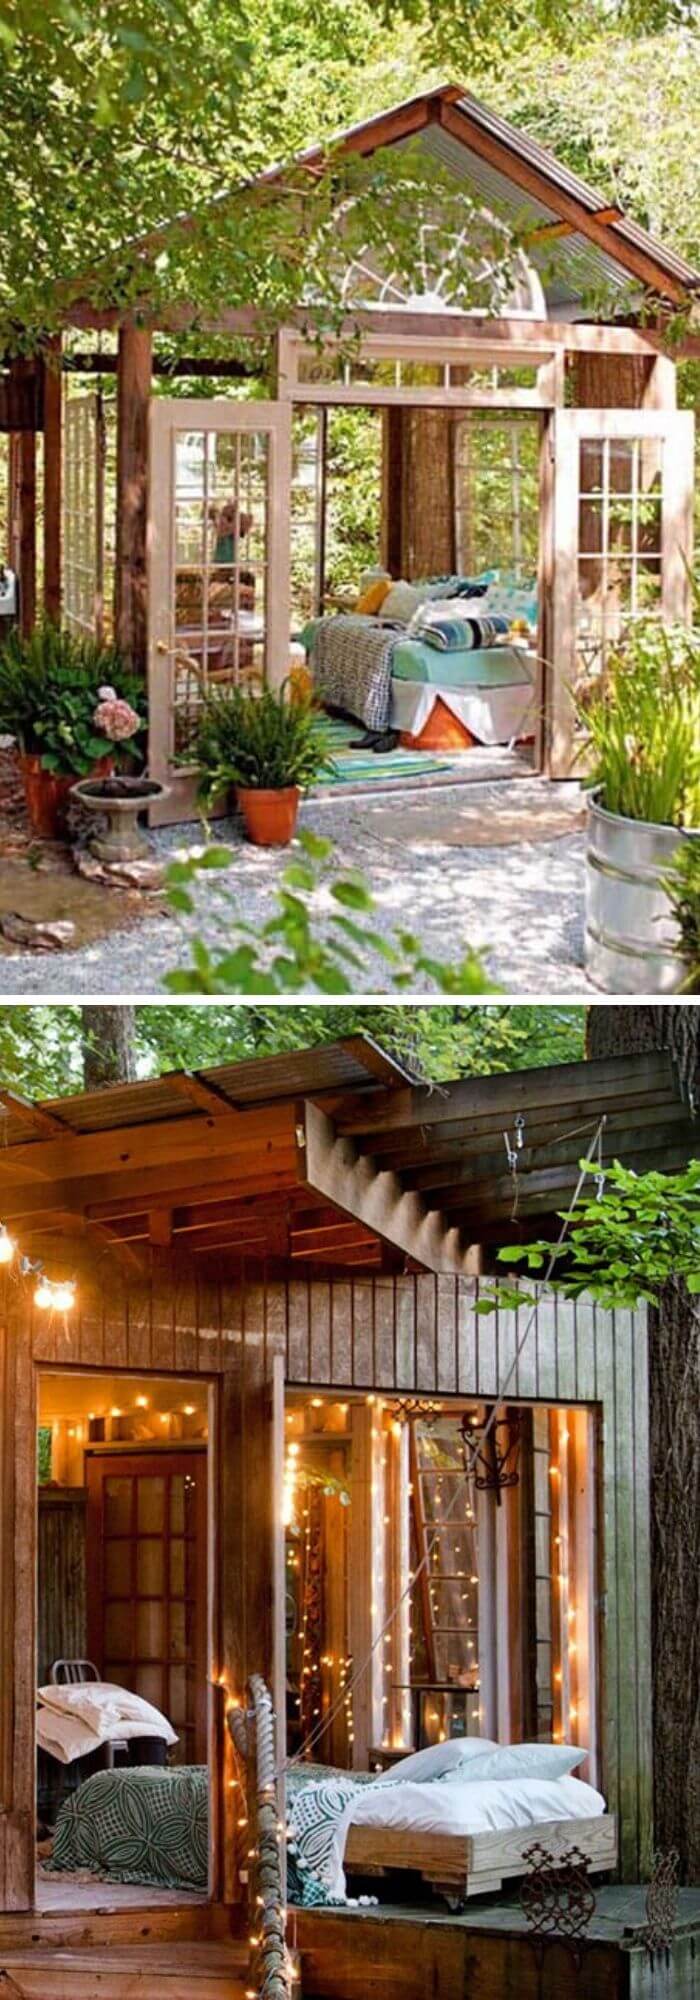 6 outdoor bedroom ideas